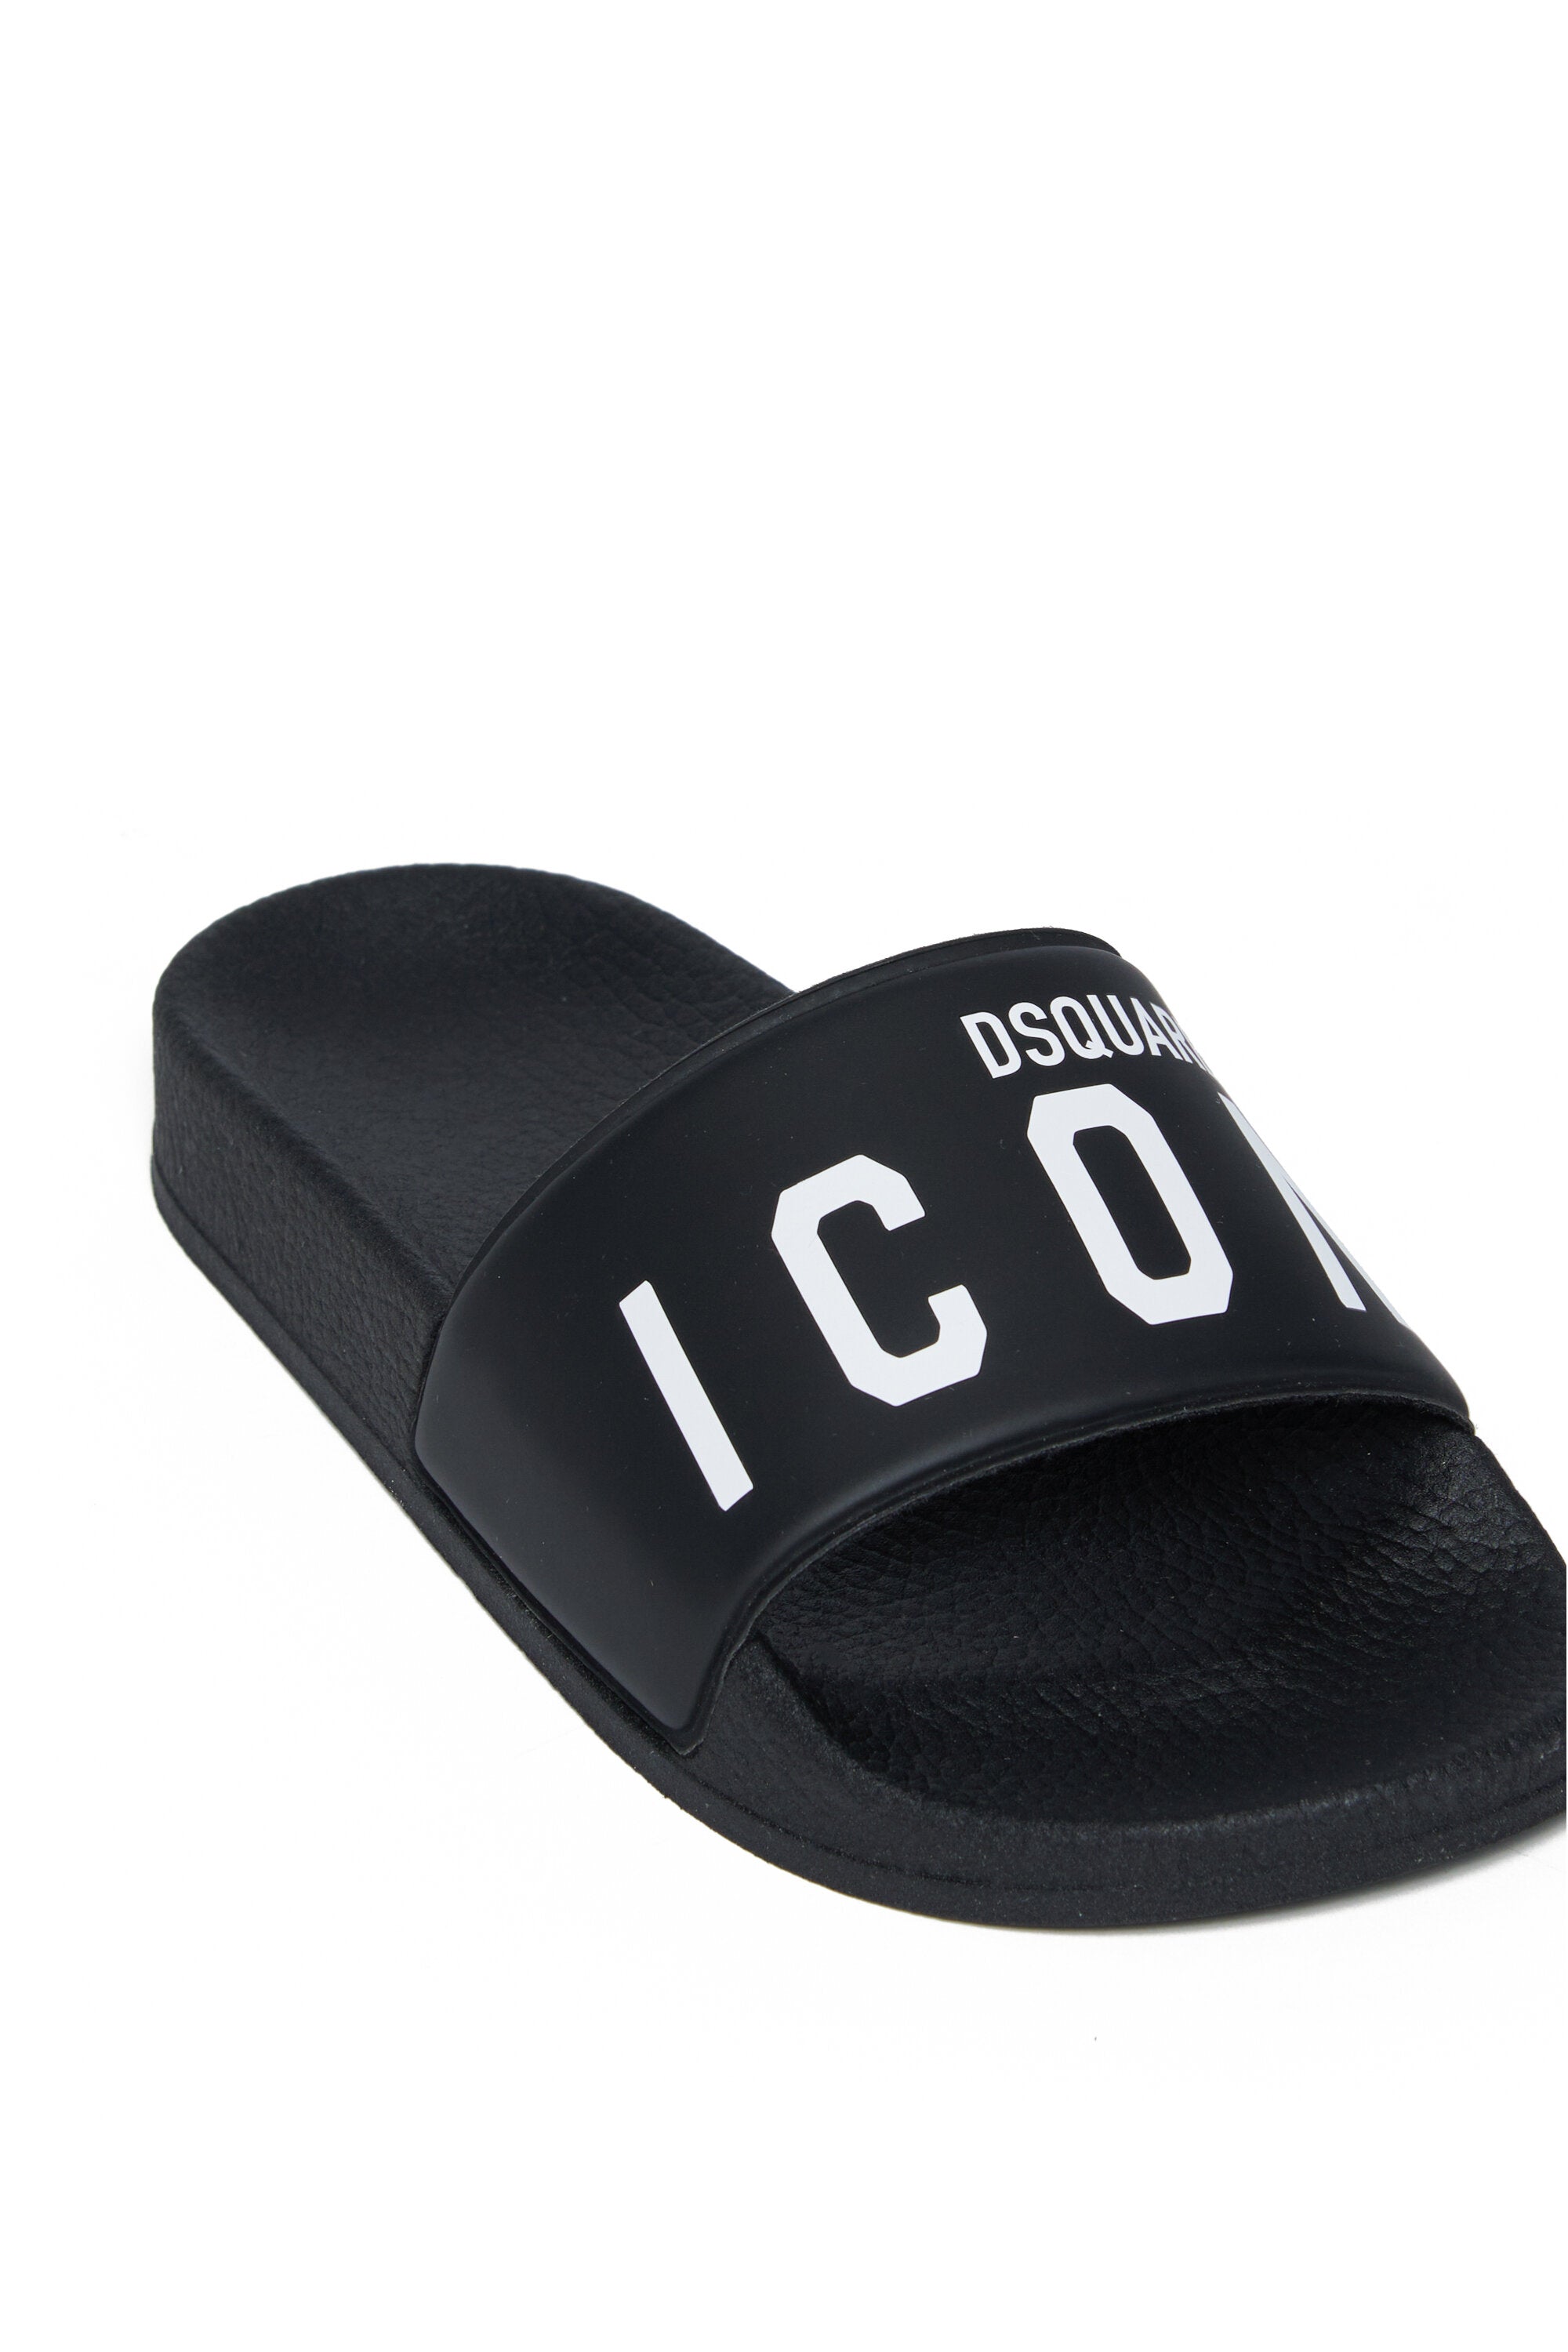 Icon branded slide slippers